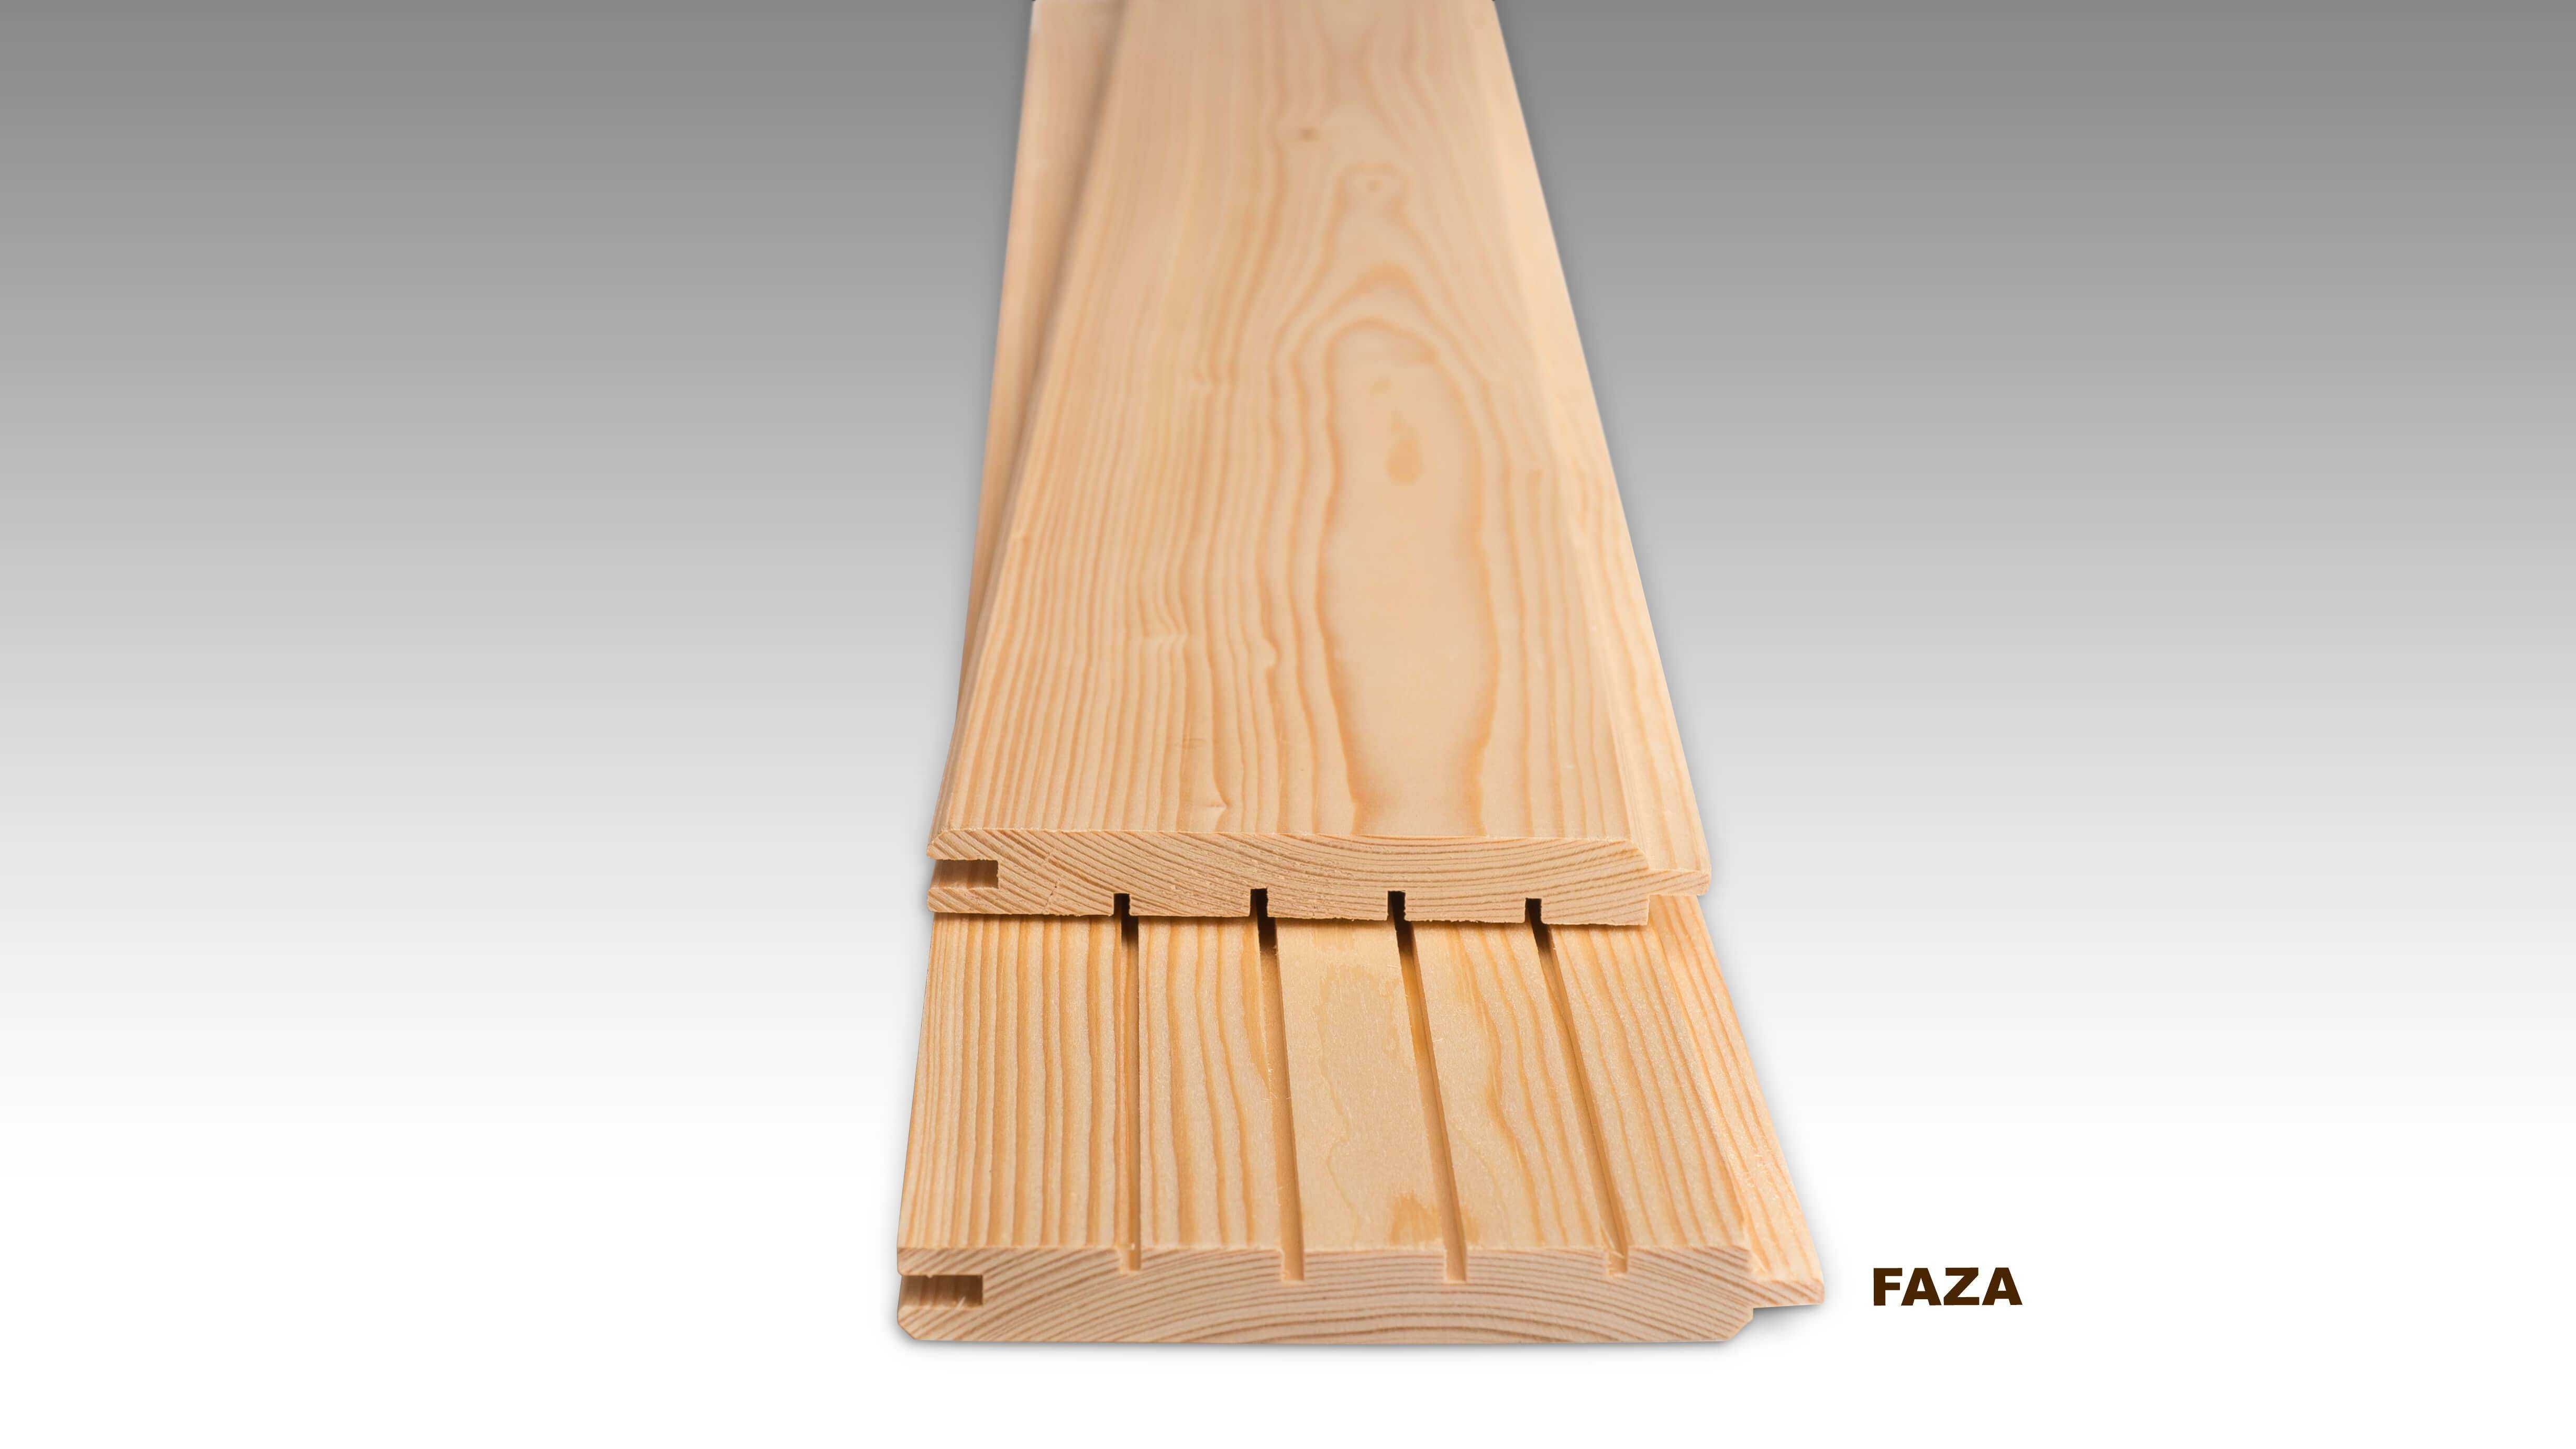 Podbitka 14x121 mm, boazeria, drewno, panele, deski do sauny ESTOŃSKIE